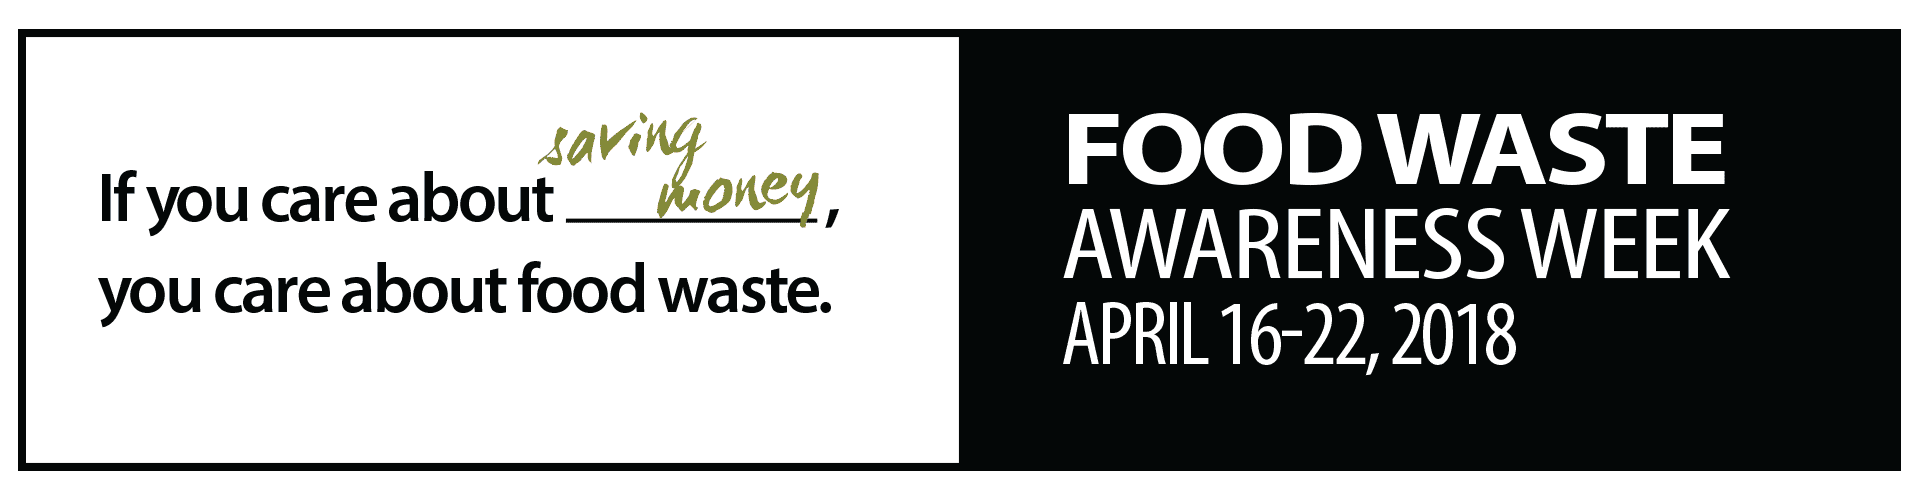 Food Waste Awareness Week banner